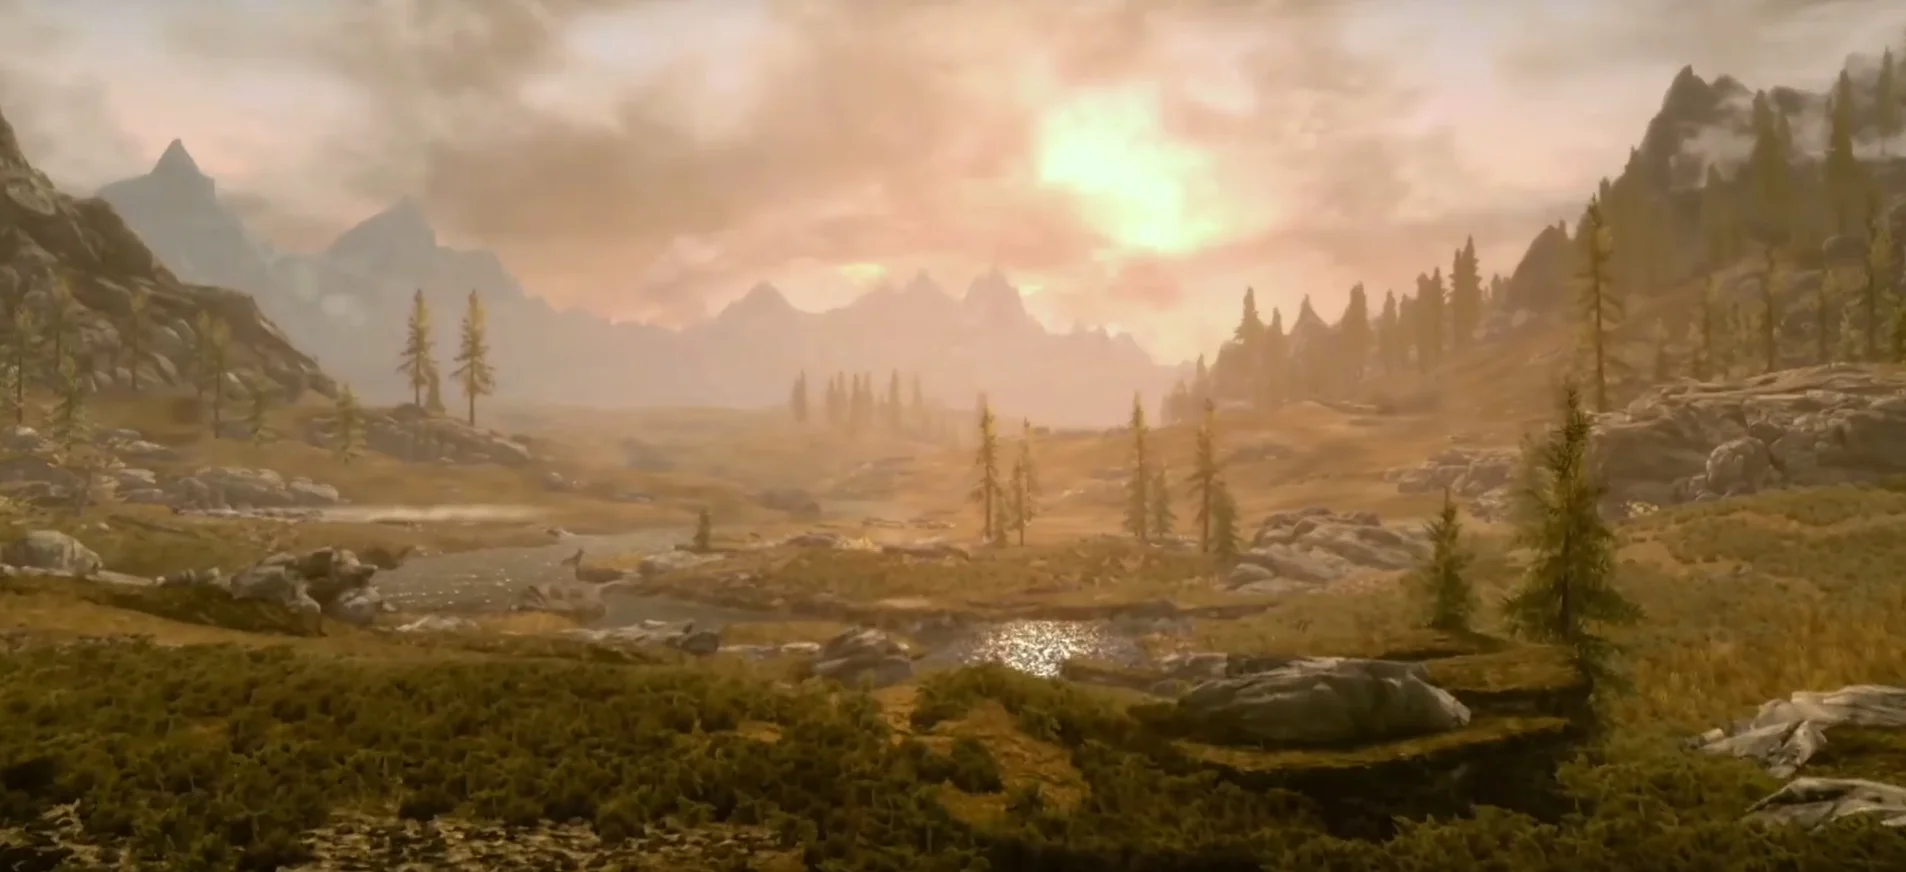 Потенциально самой «графонистой» игрой на Switch впервый год станет The Elder Scrolls 5: Skyrim, и эта версия весьма далека по качеству от недавнего переиздания